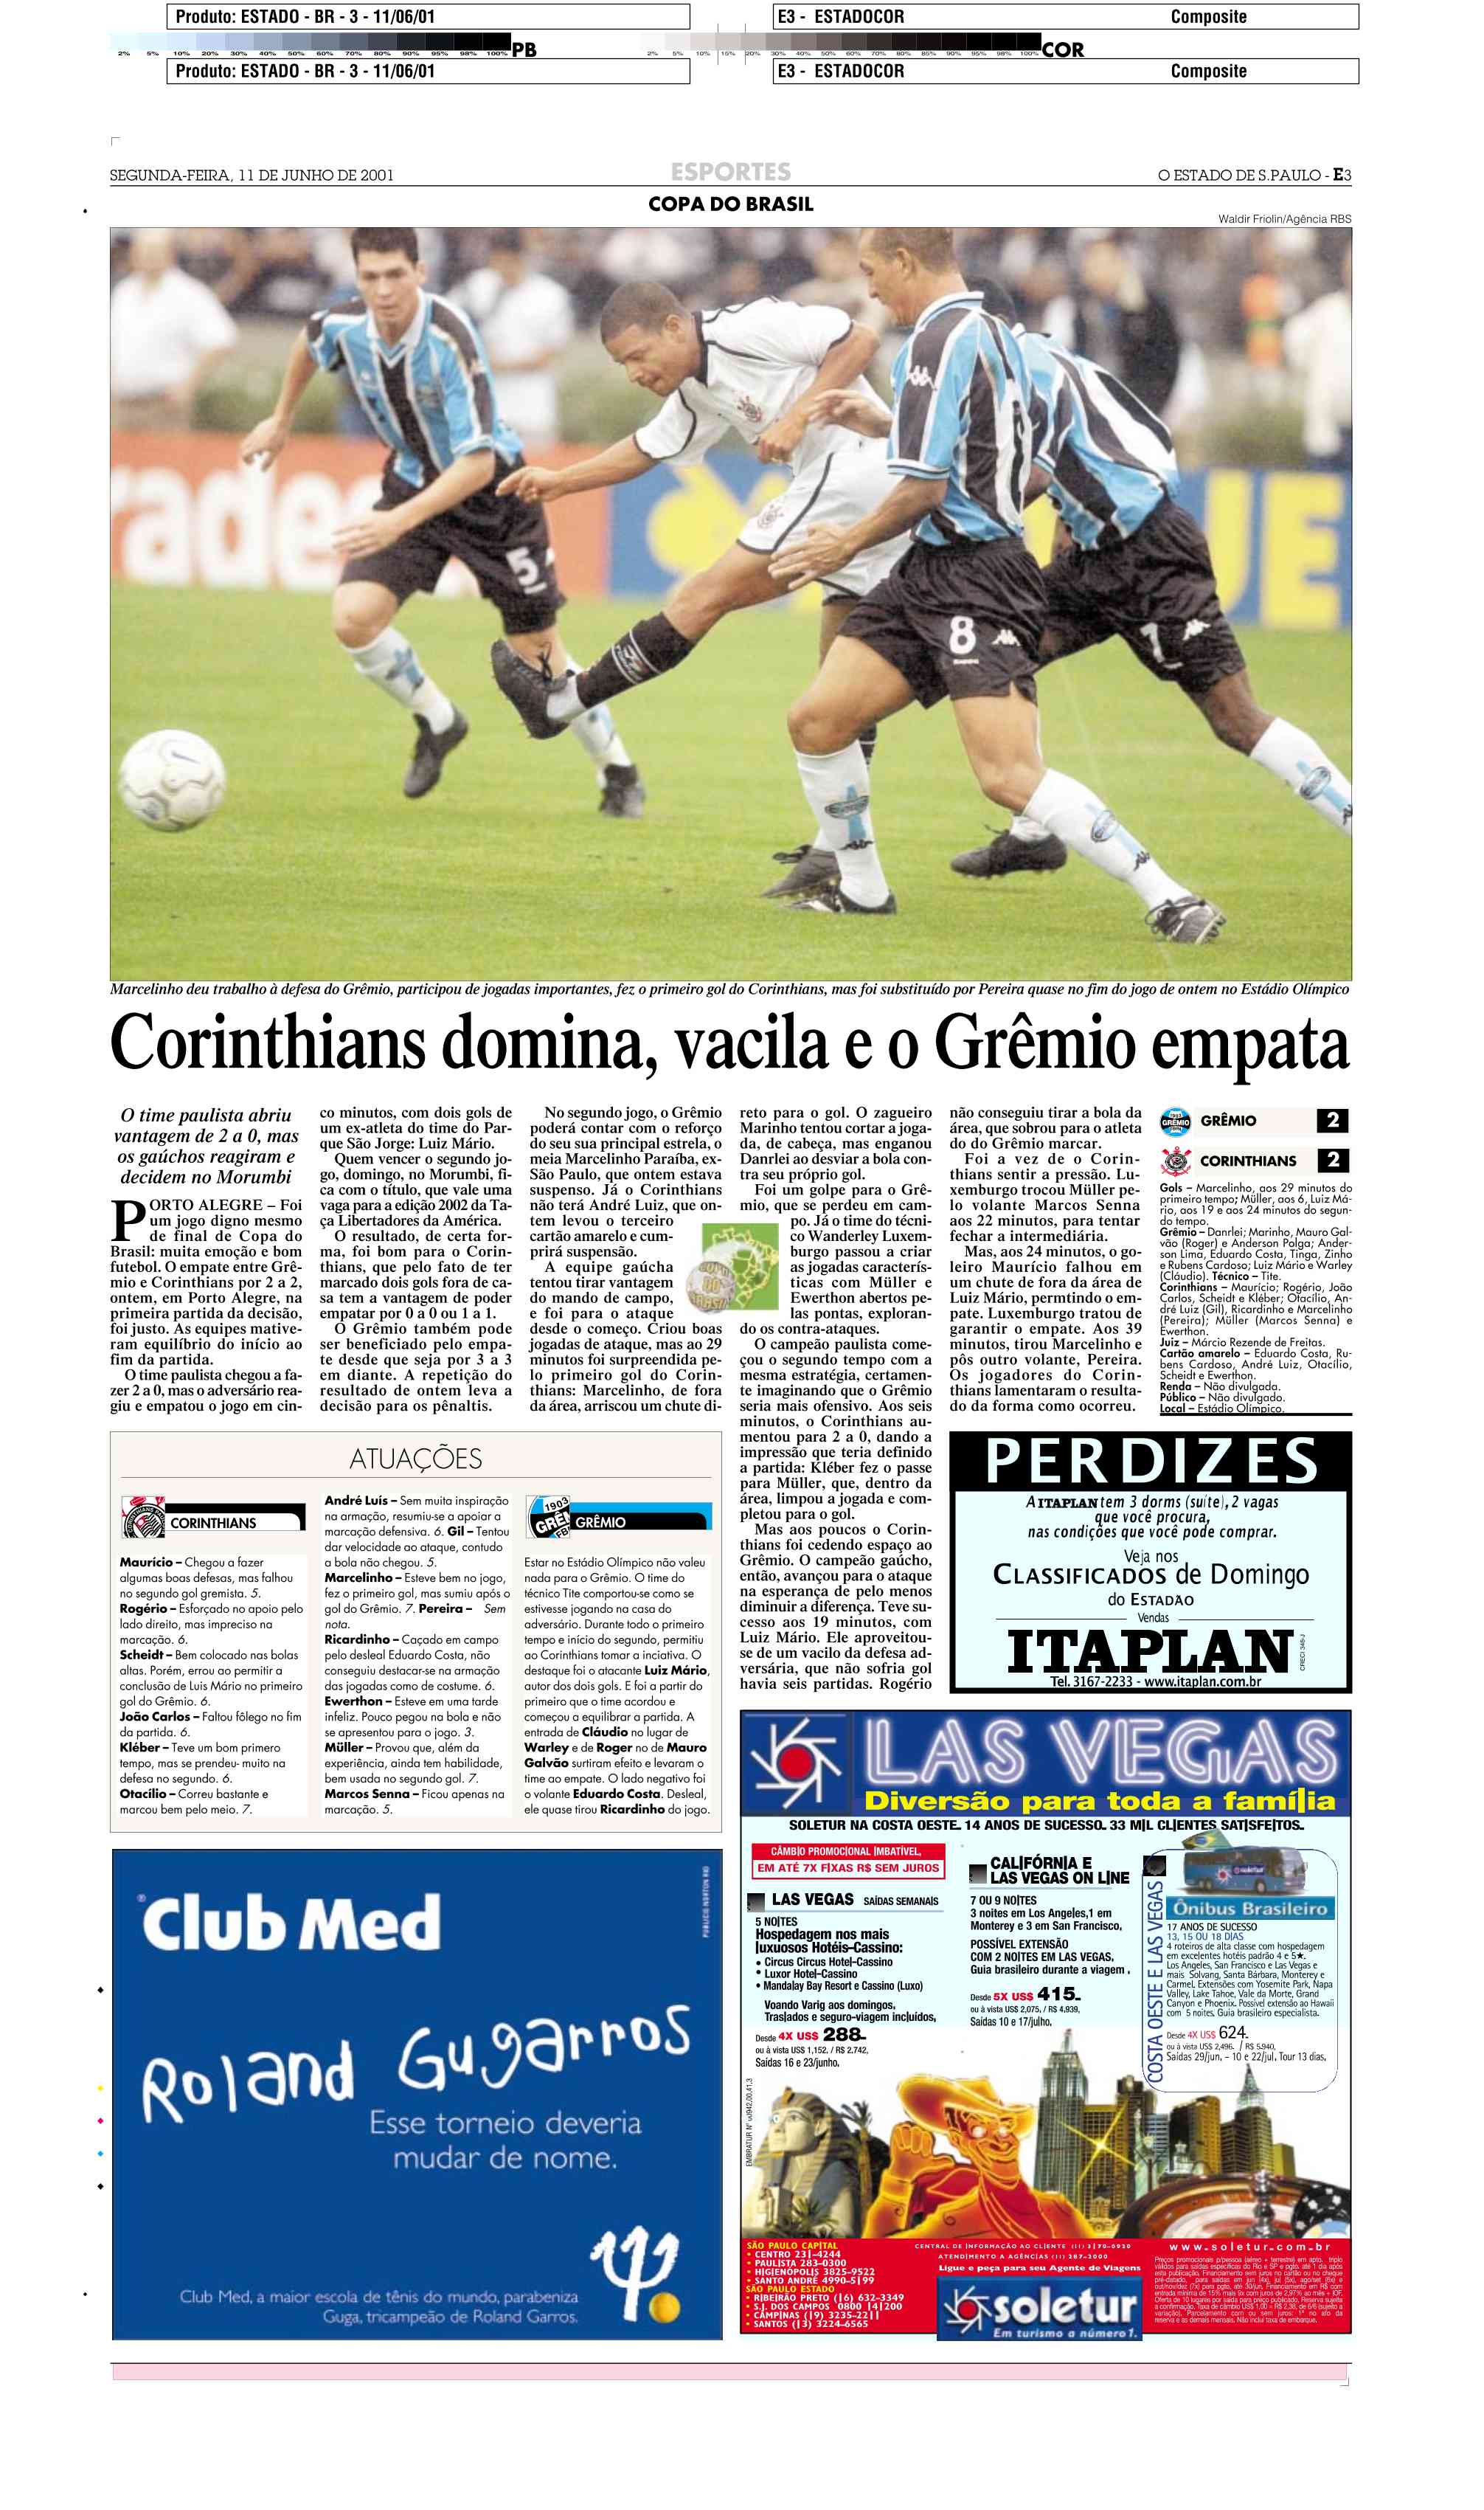 Grêmio Dados: 25/11/2001 - Campeonato Brasileiro: Atlético-MG 2x0 Grêmio